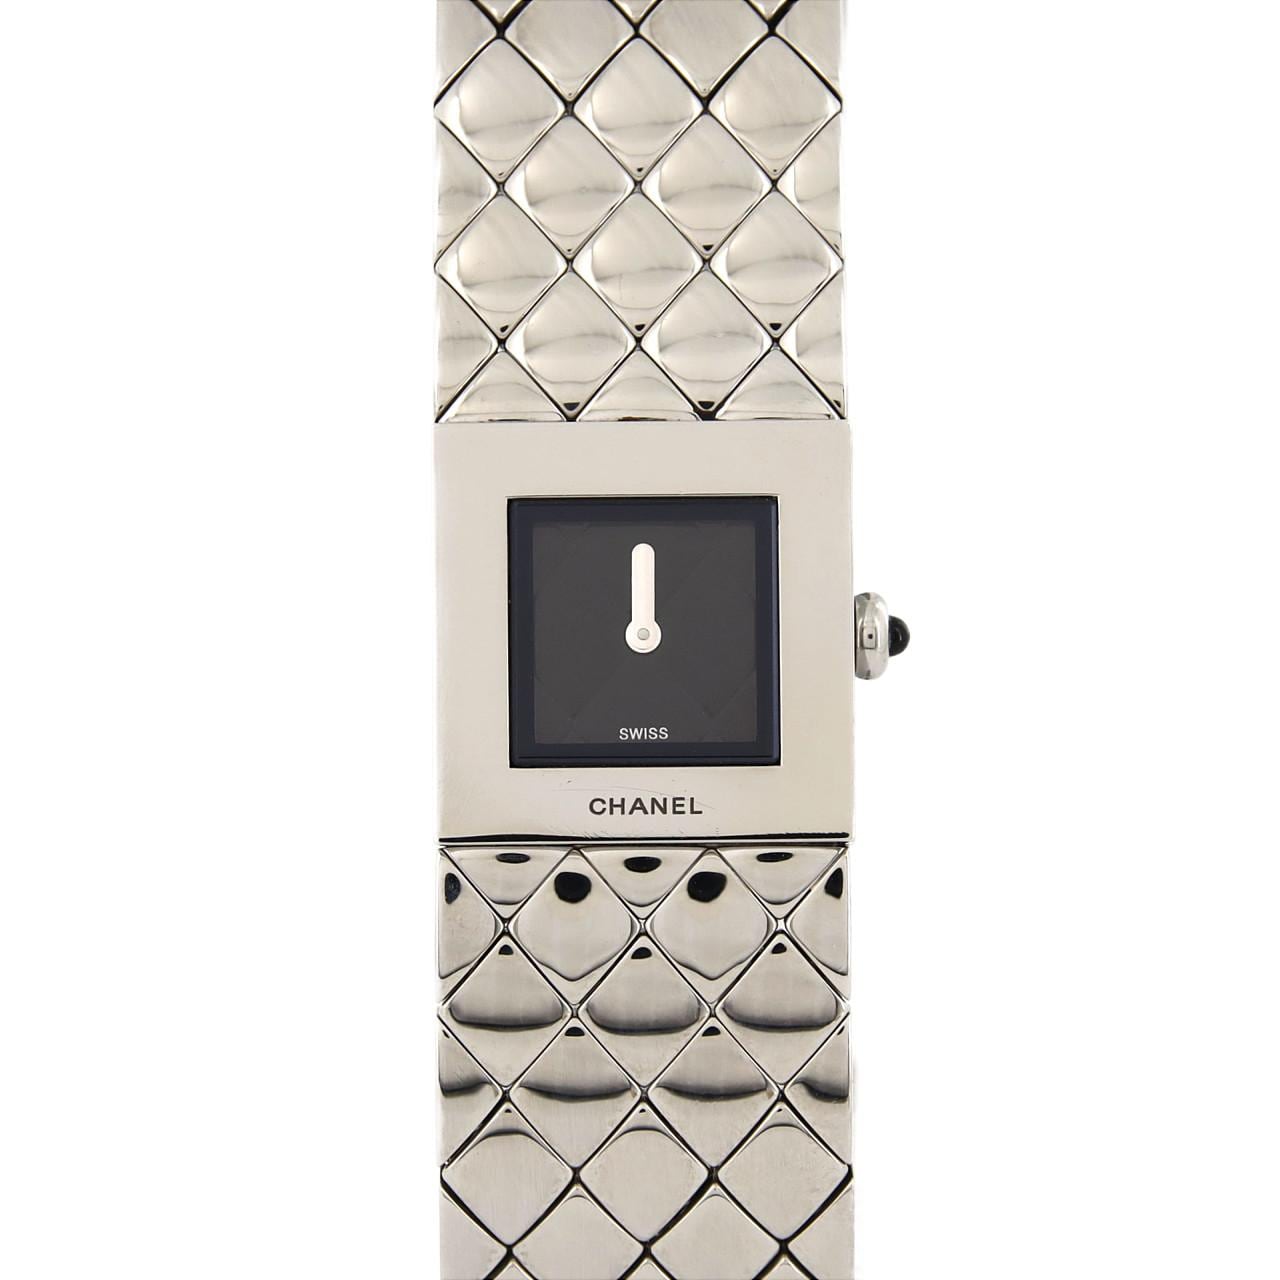 豊富な品CHANEL シャネル 腕時計 マトラッセ クオーツ 黒文字盤 2針 アナログ ブラック レザーベルト ステンレス SS レディース 管理RY22001905 マトラッセ